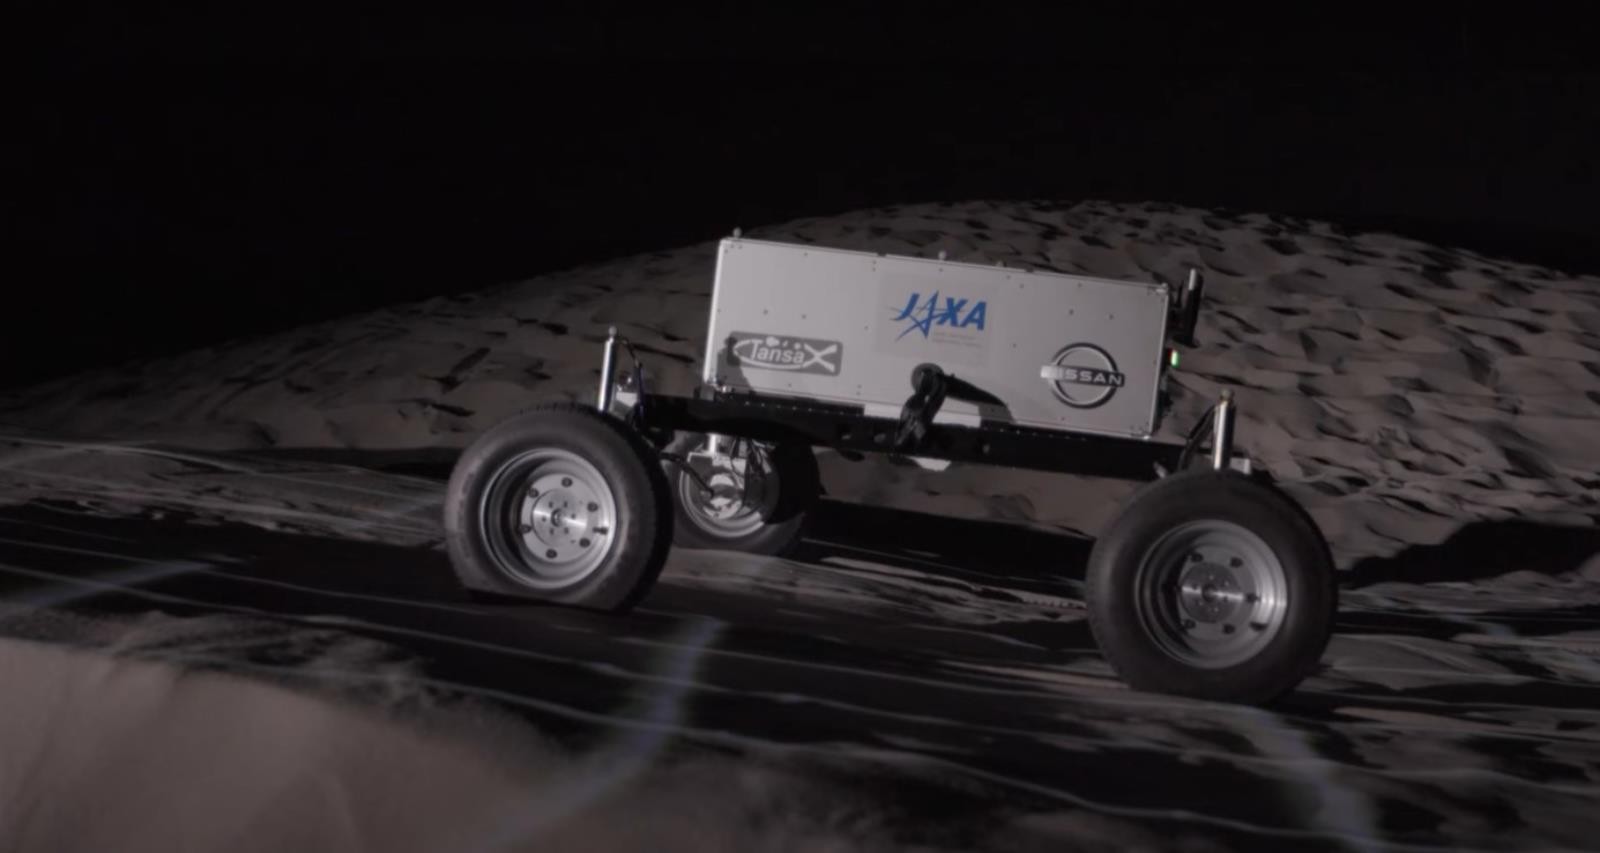 Dzięki Nissanowi JAXA stworzyła łazik na Księżyc z wydajnym systemem e-4ORCE, łazik na Księżyc